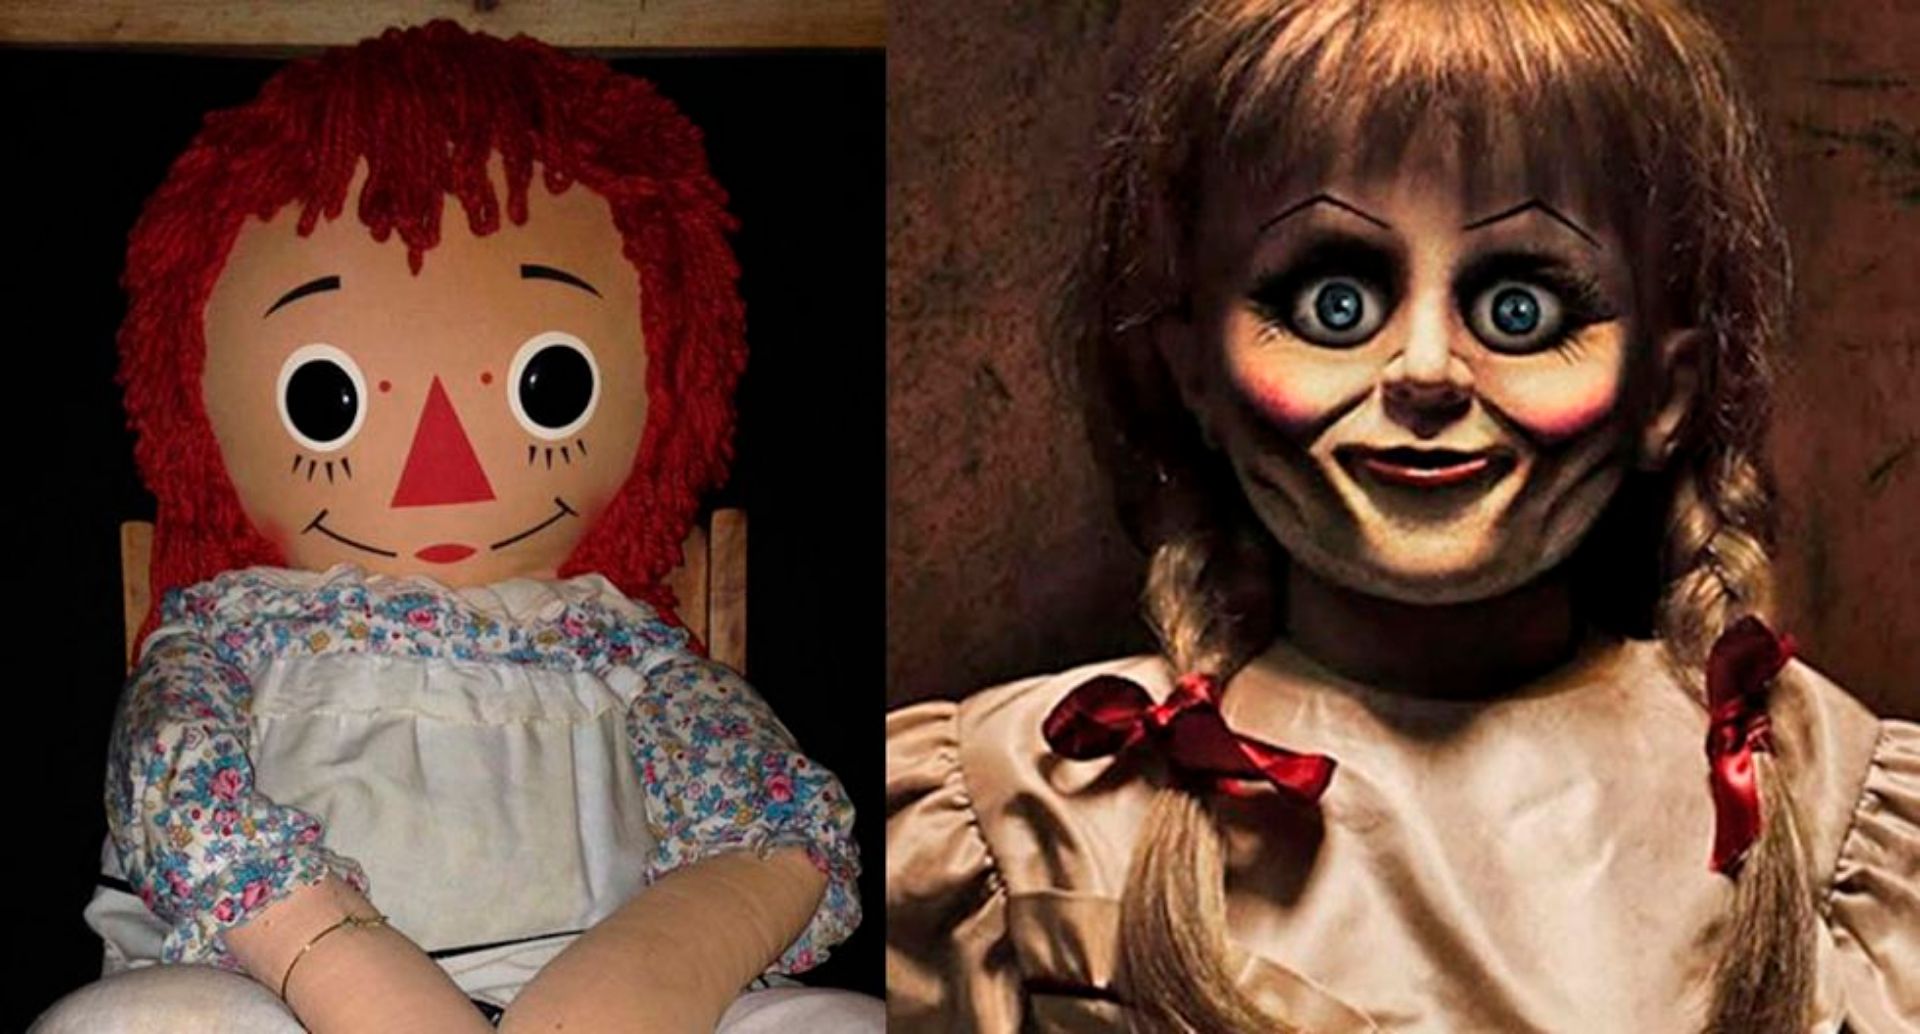 La muñeca Annabelle "escapó" del Museo donde se encontraba? 